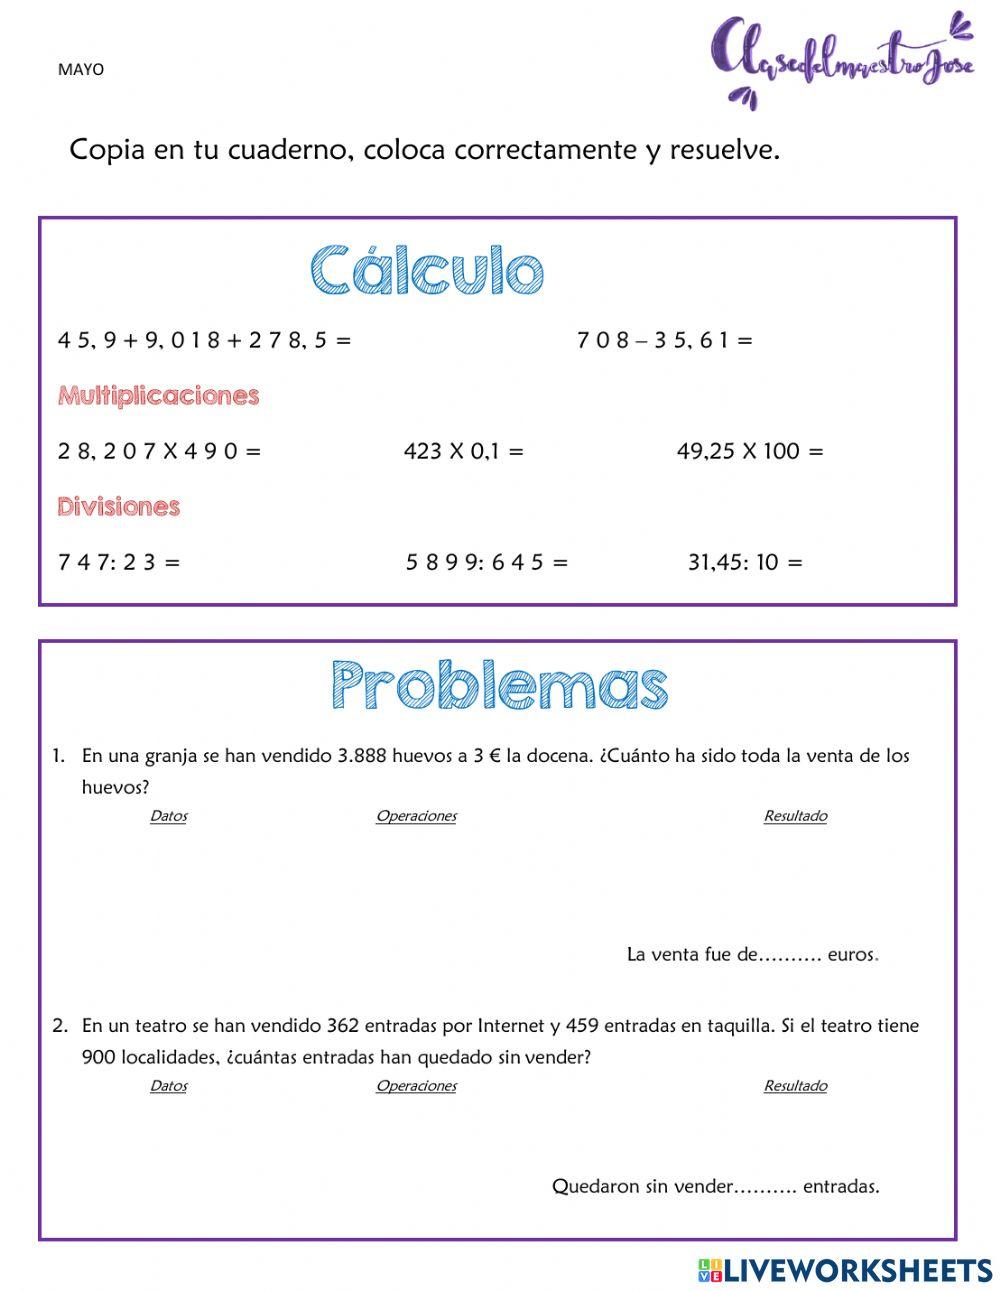 Cálculo matemático y problemas